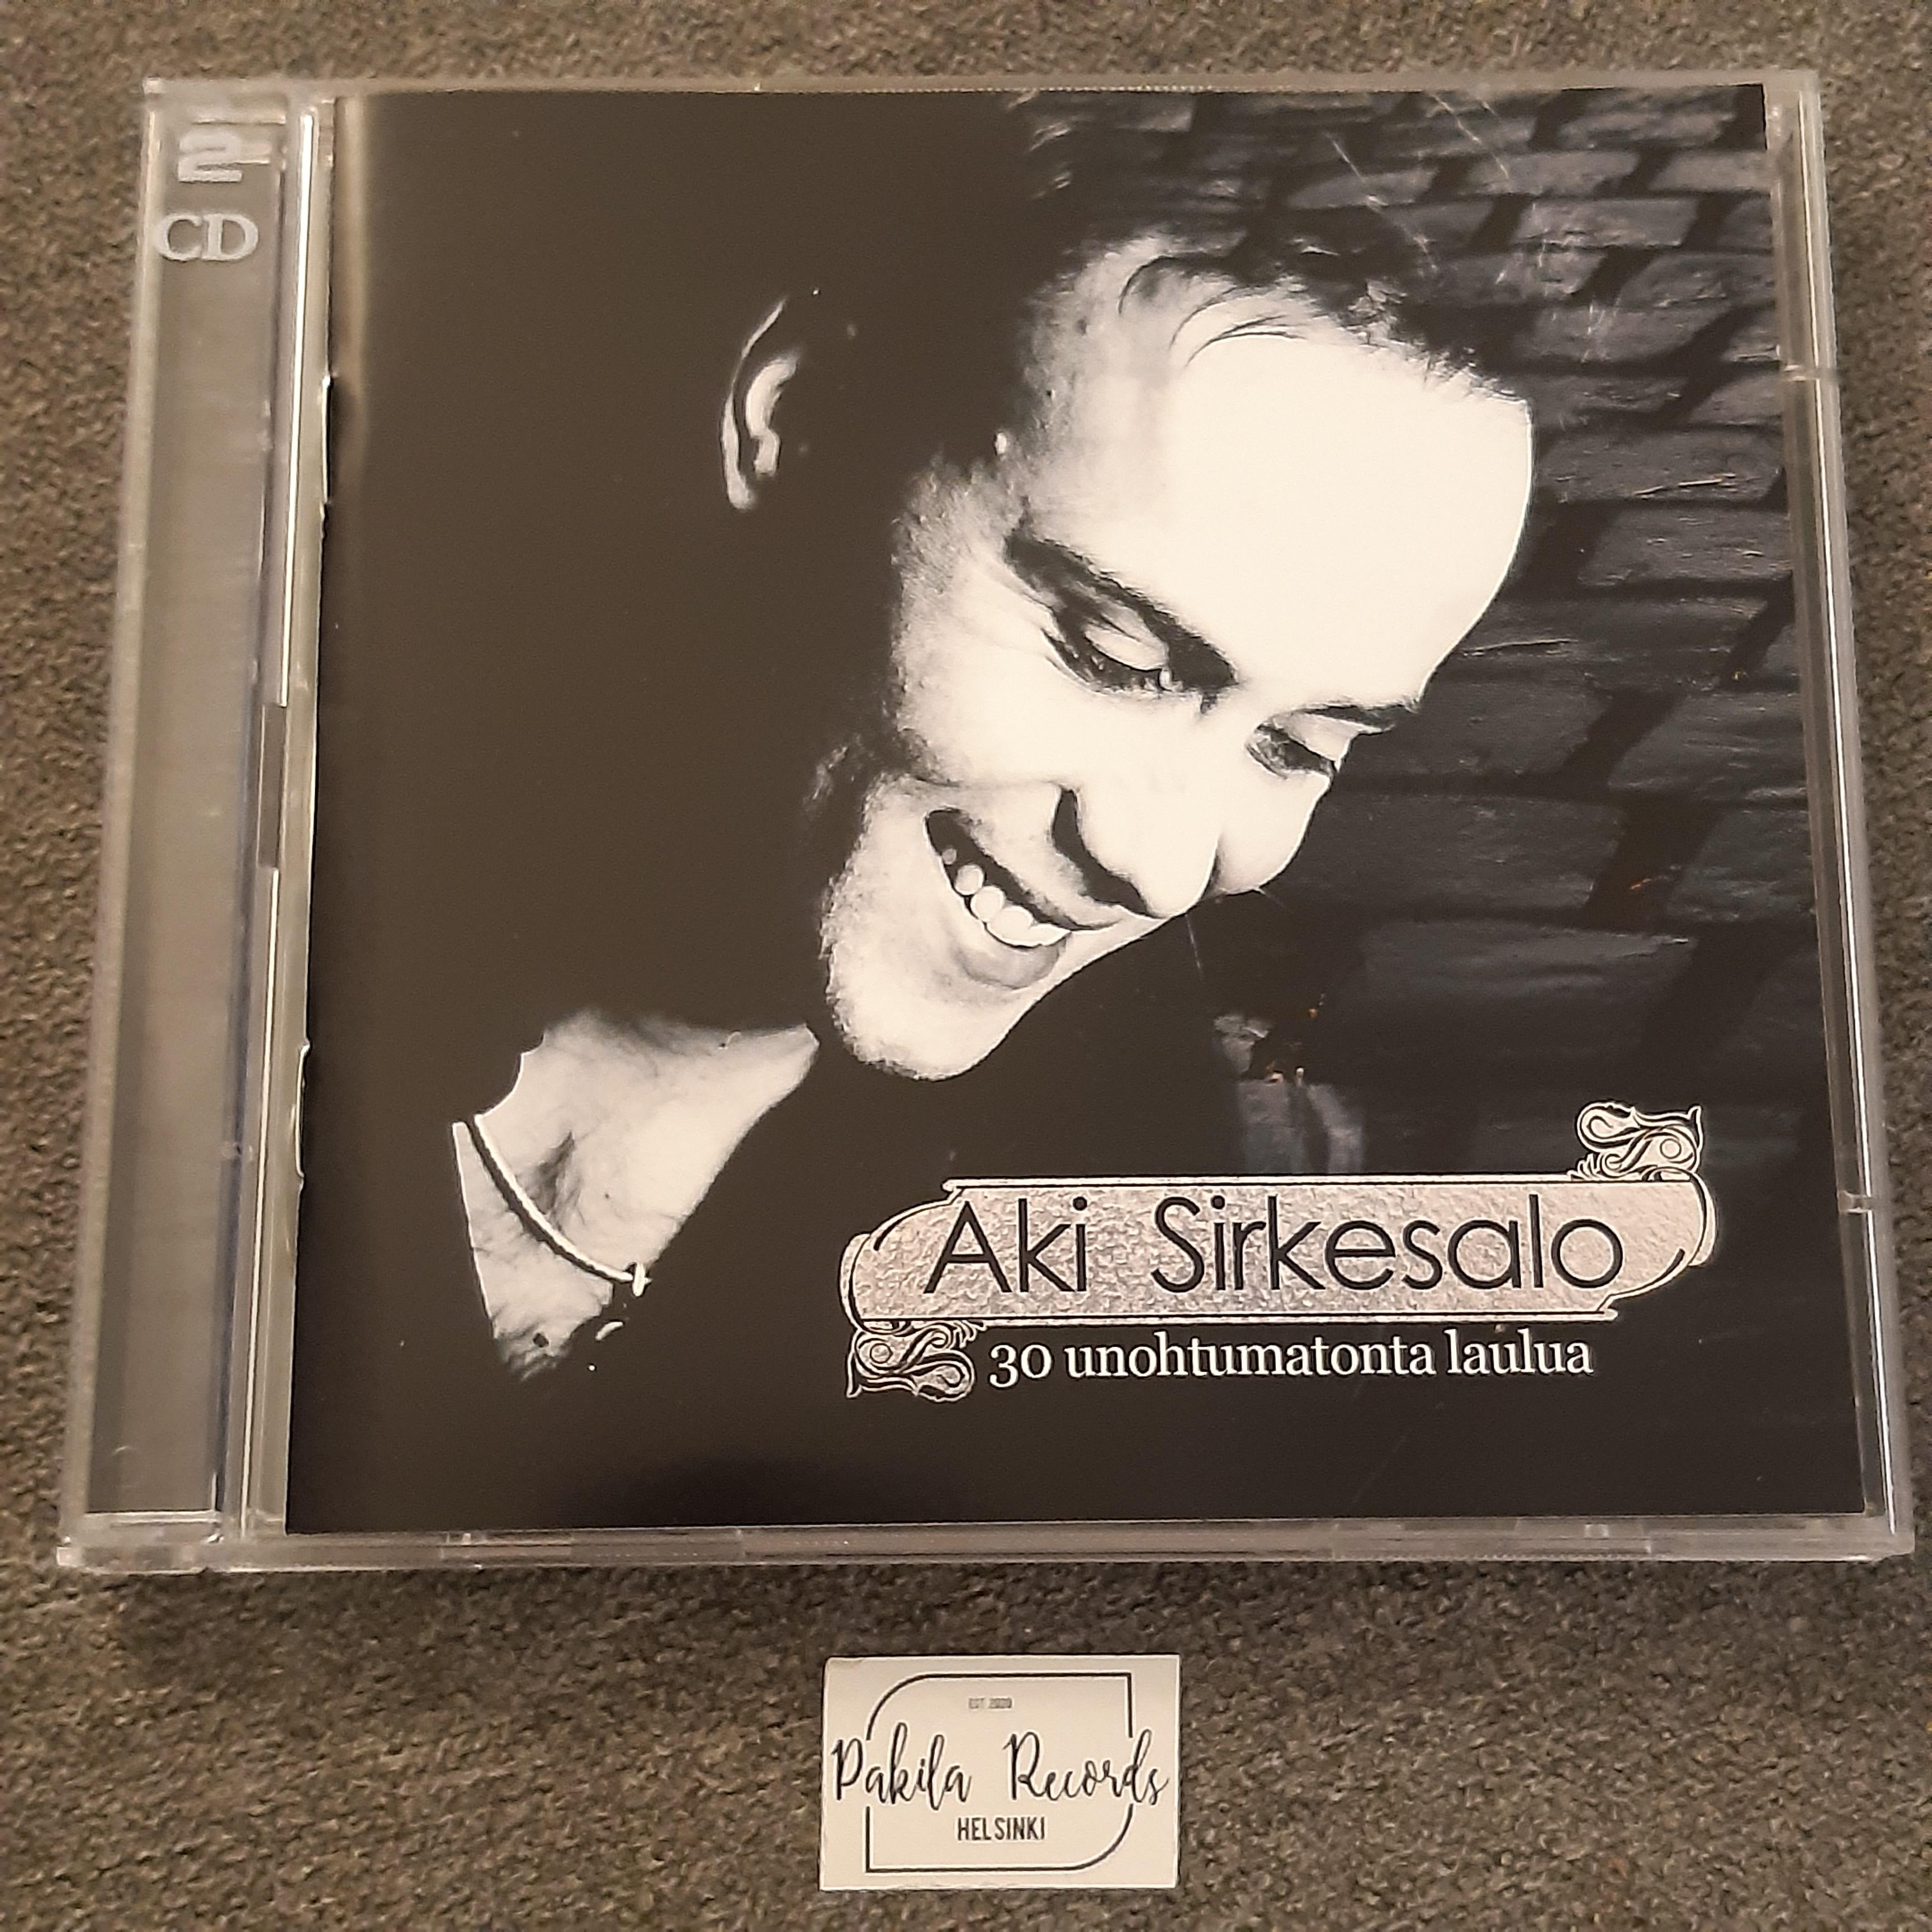 Aki Sirkesalo - 30 unohtumatonta laulua - 2 CD (käytetty)